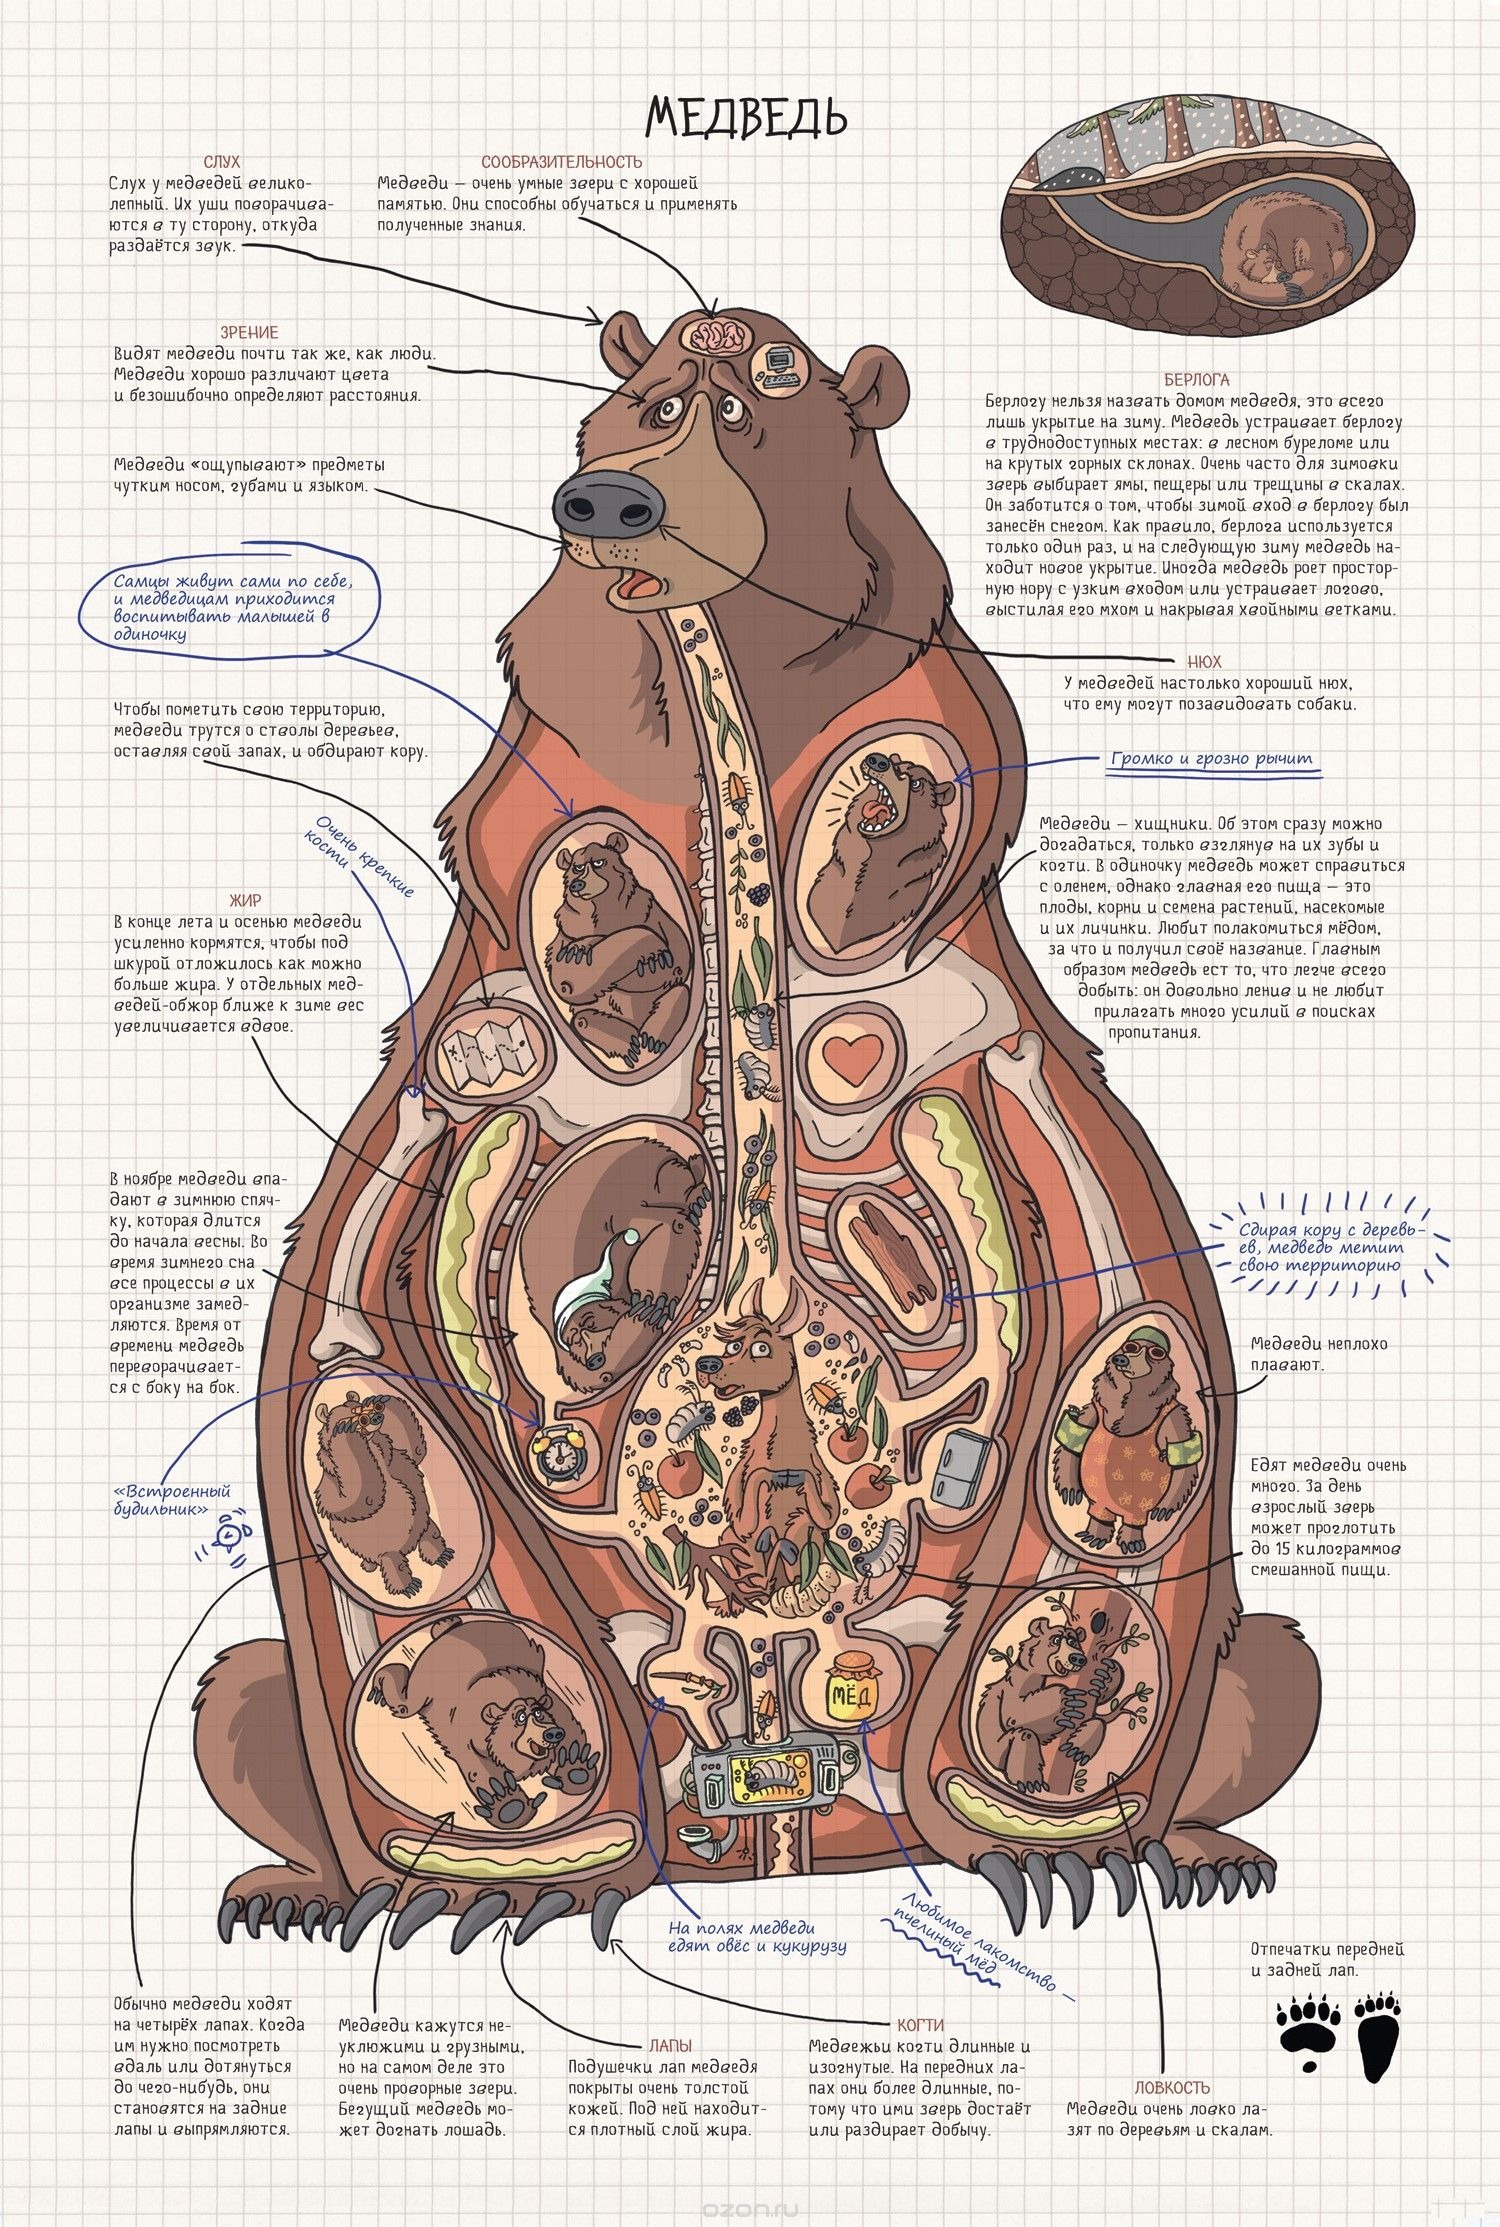 Особенности внутреннего строения медведя. Внутреннее строение бурого медведя. Анатомия медведя внутренние органы. Анатомия бурого медведя внутреннее строение. Анатомия медведя пищеварительная система.